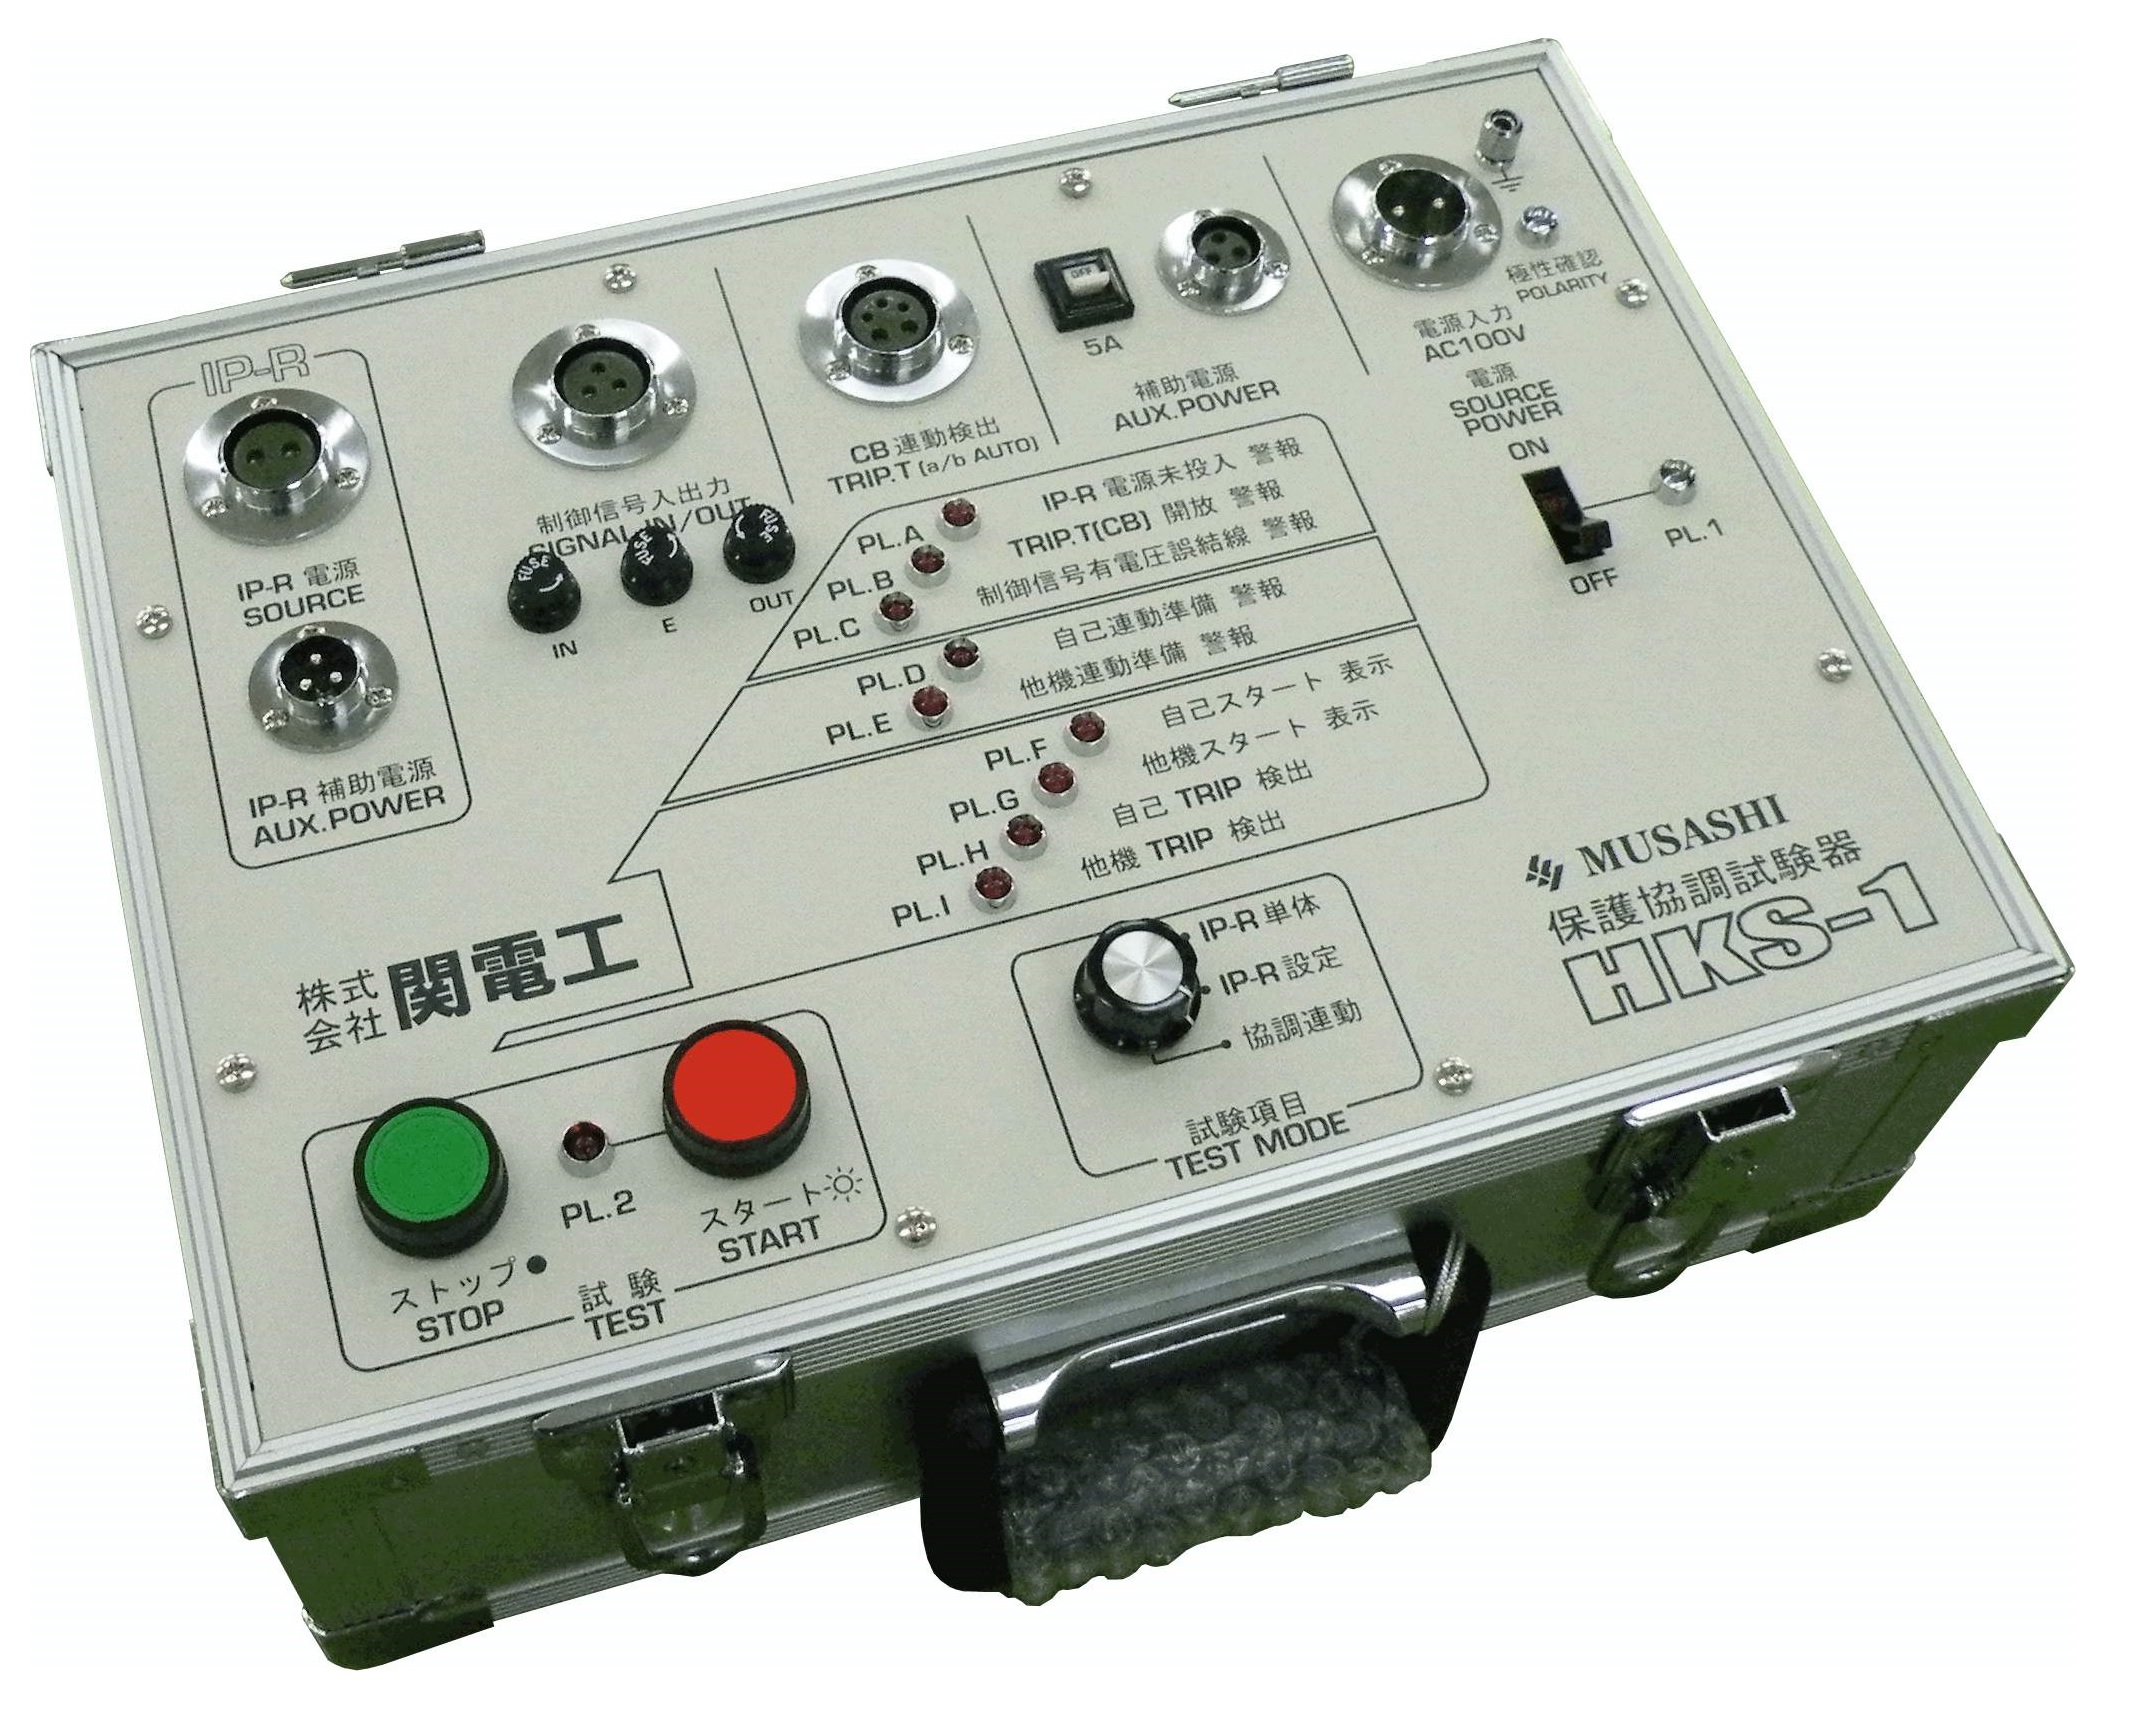 株式会社ムサシ電機計器製作所 IP-R2 R-1220型 耐電圧トランス部 電圧 